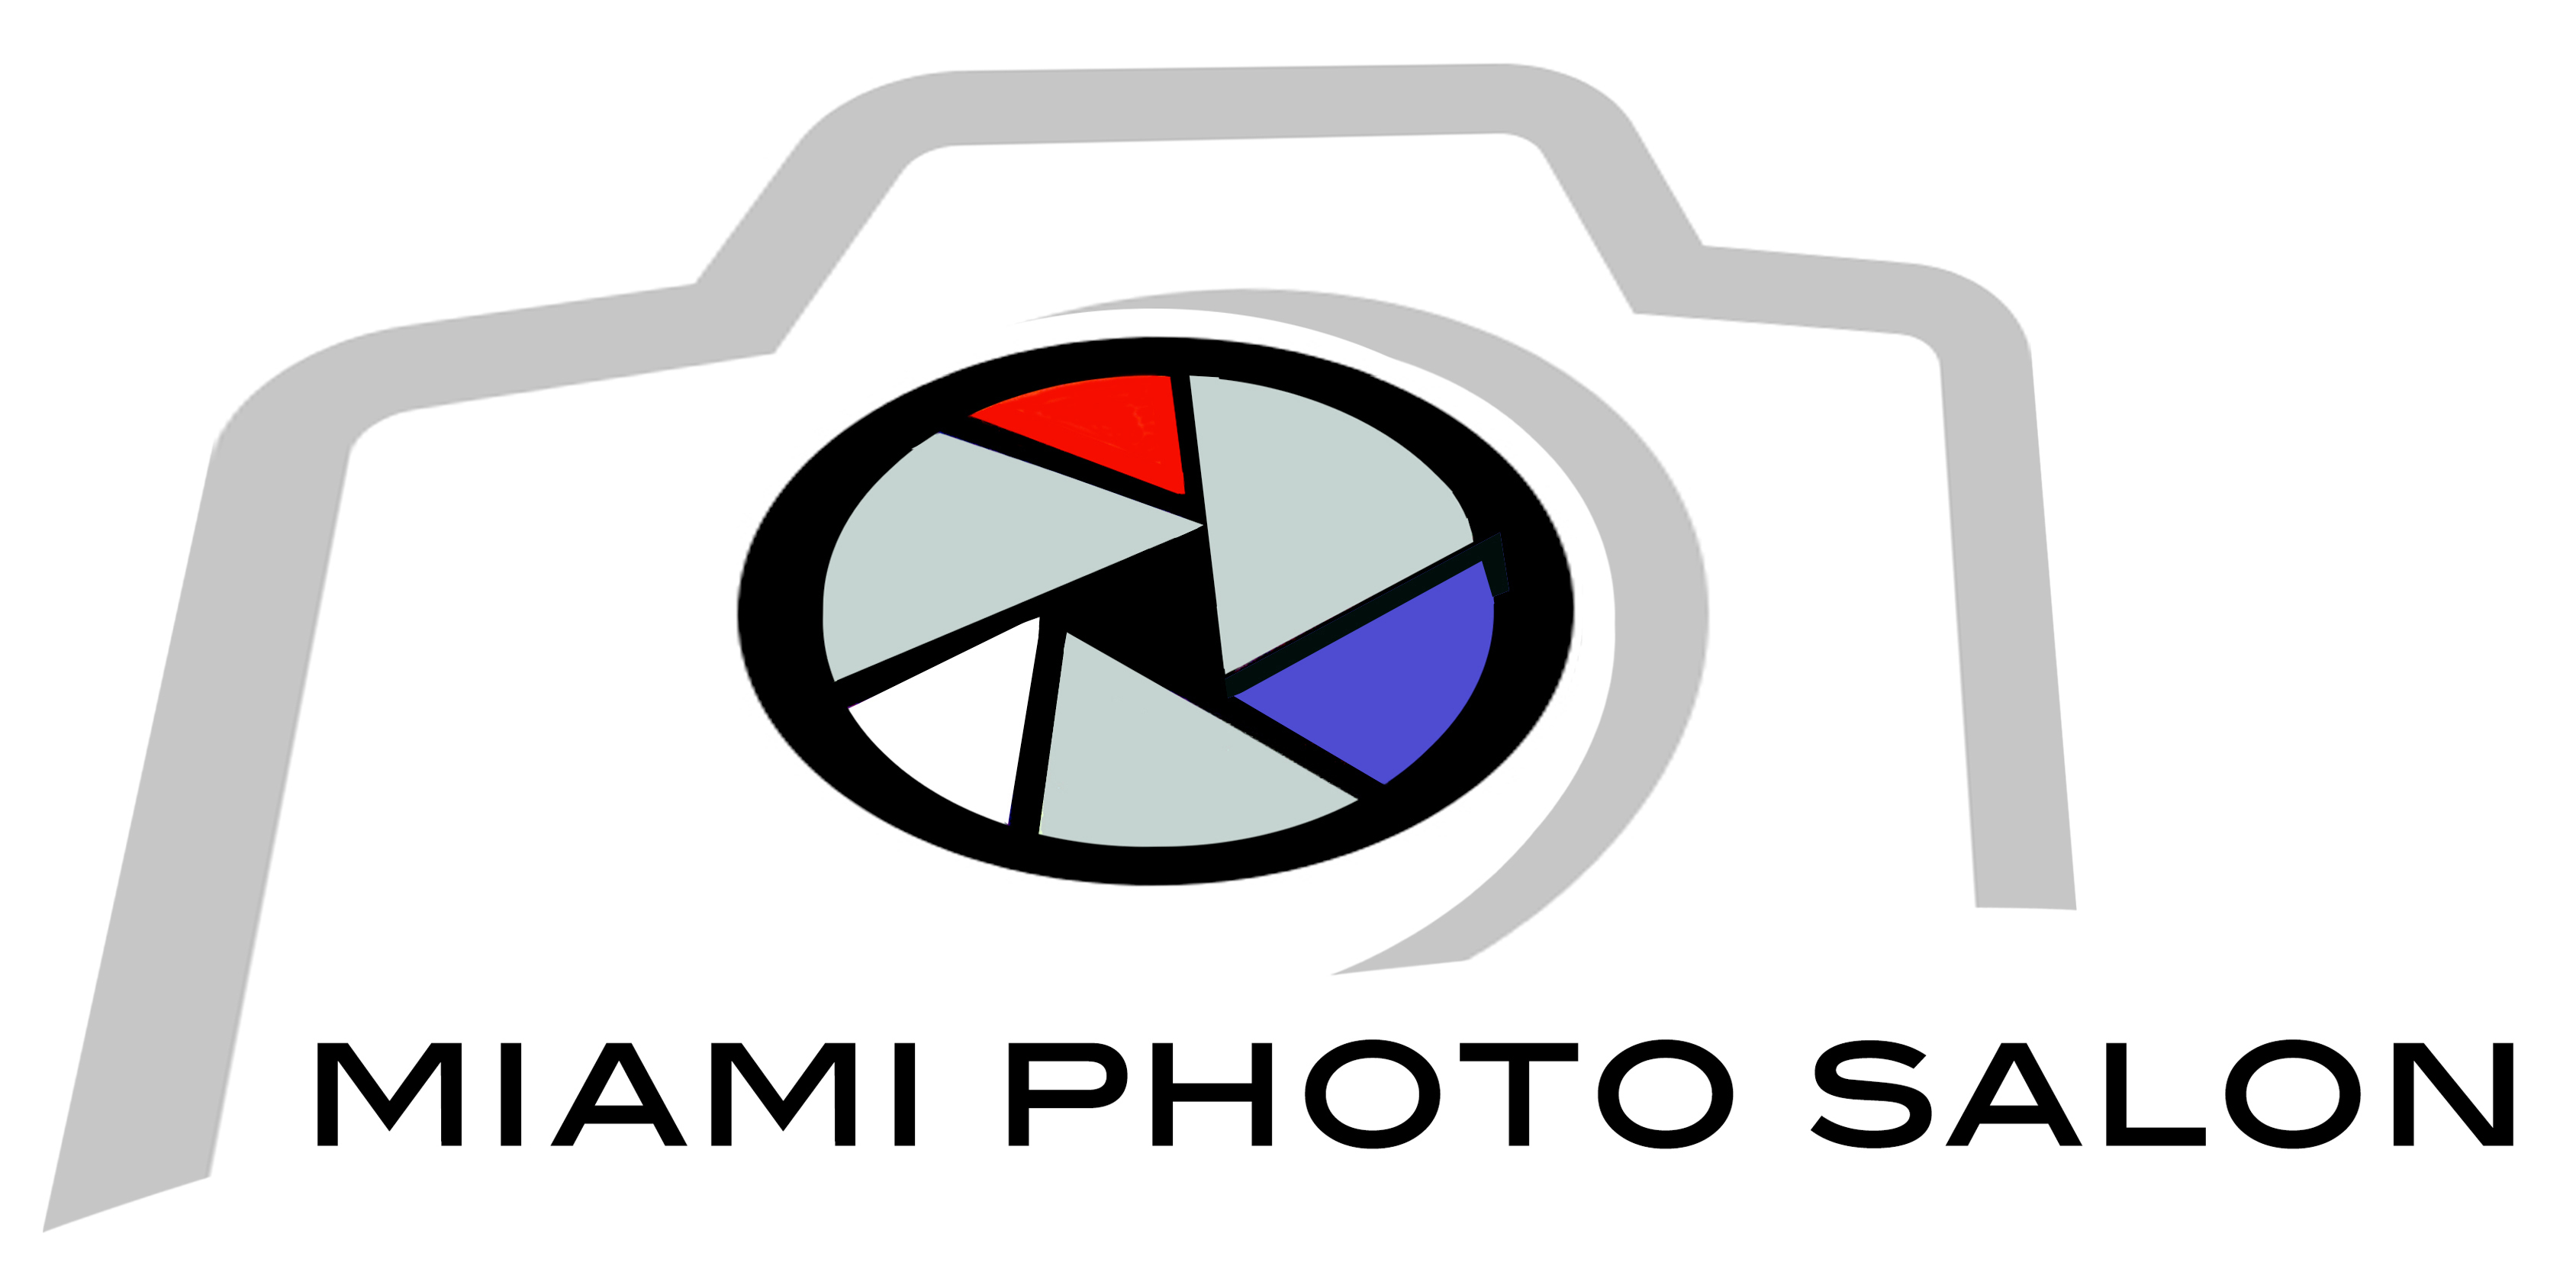 Miami Photo Salon Festival